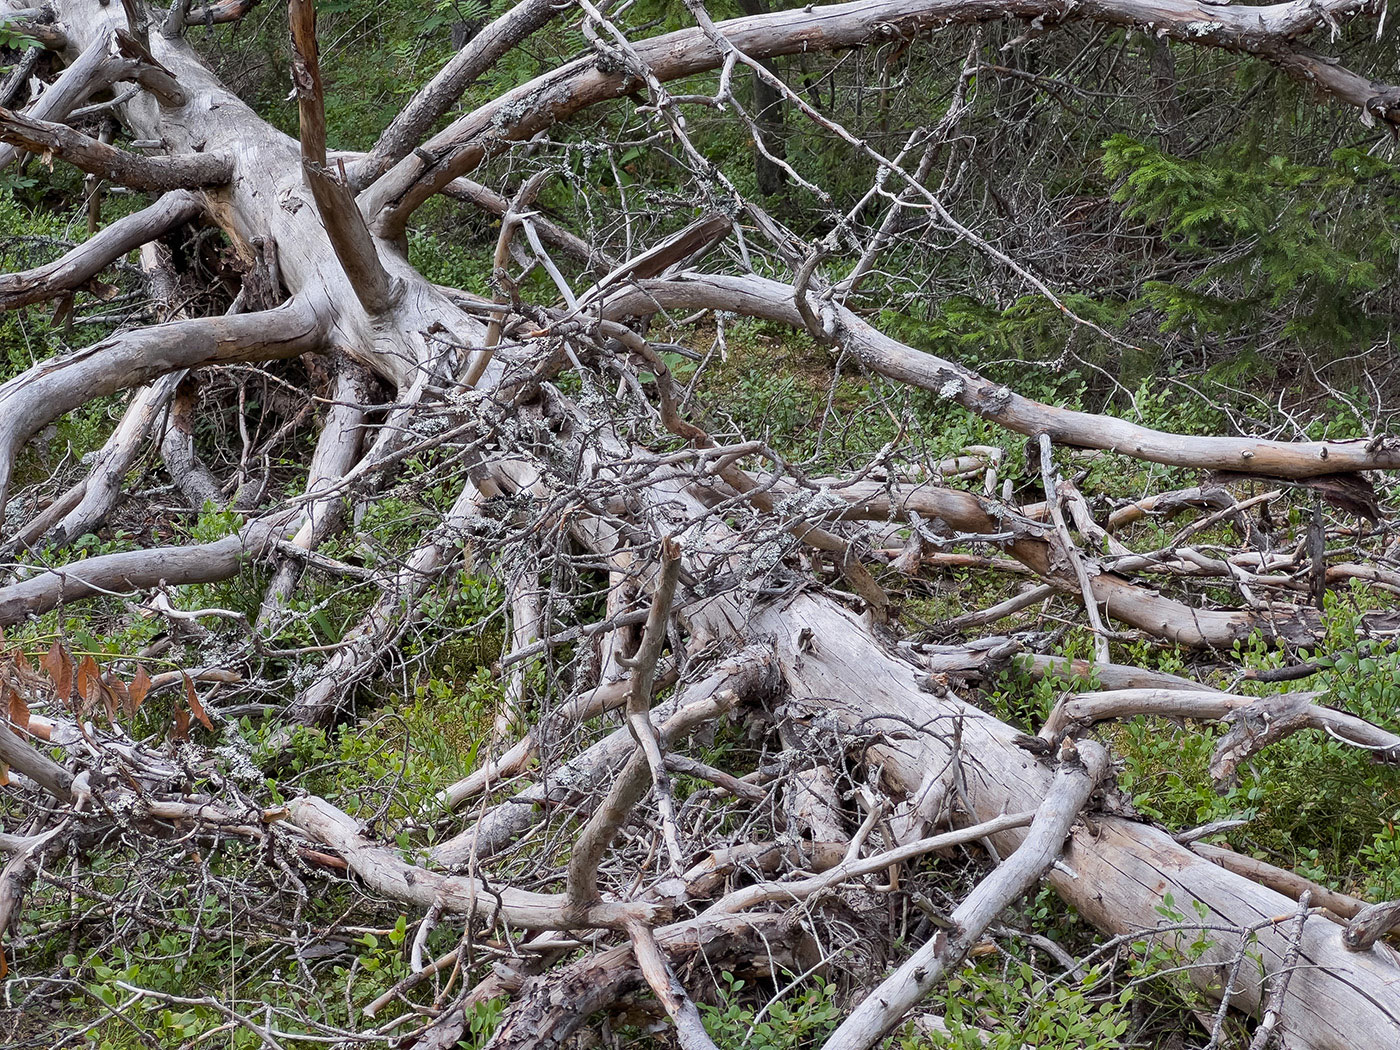 En grånad, död trädstam ligger på marken, diagonalt från övre vänstra hörnet på bilden till nedre högra. Kvistar spretar åt alla håll. 